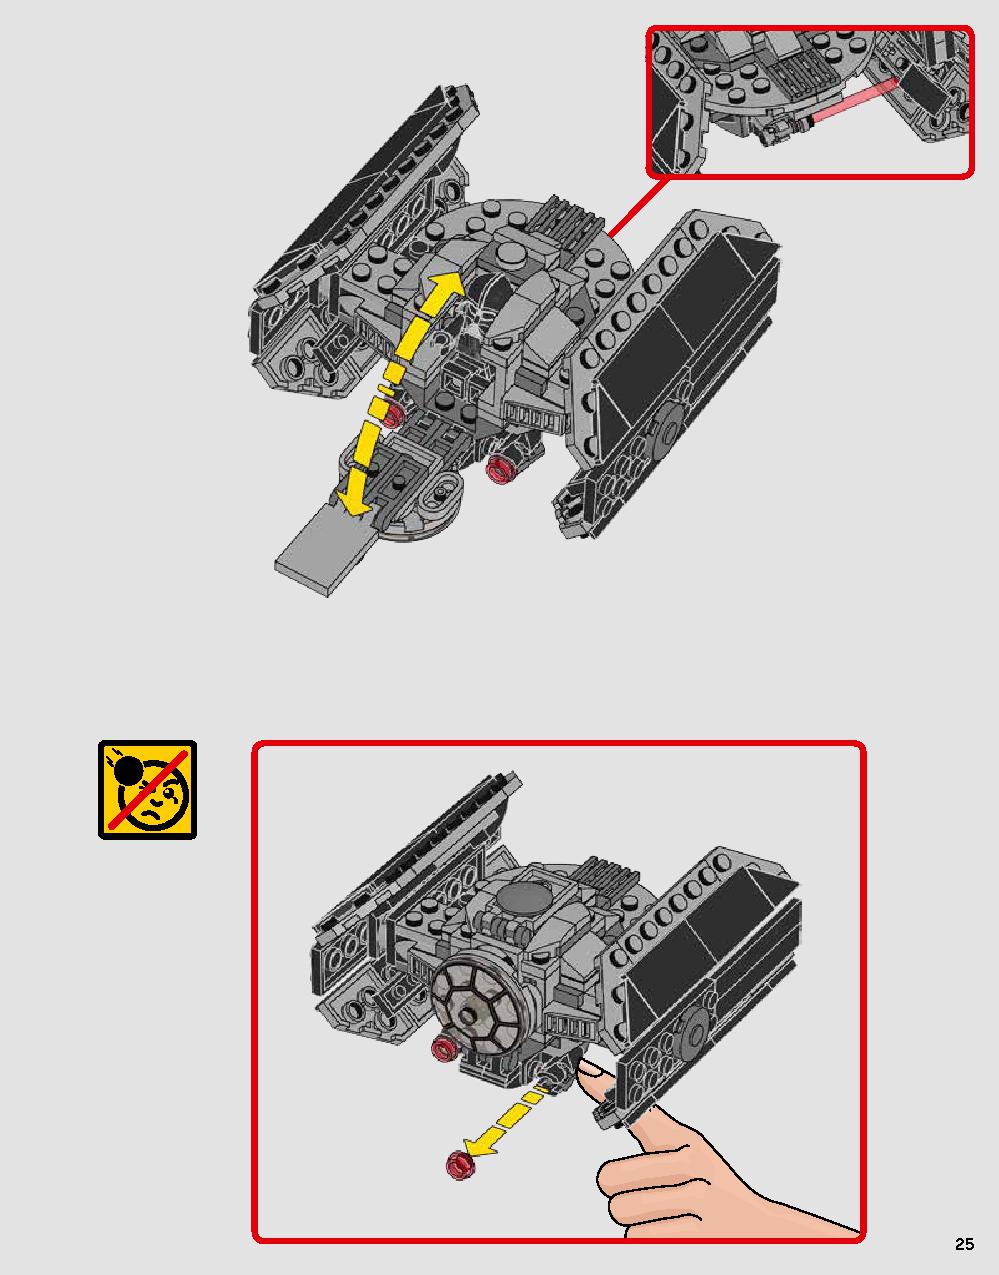 스타워즈 다스베이더 캐슬 75251 레고 세트 제품정보 레고 조립설명서 25 page